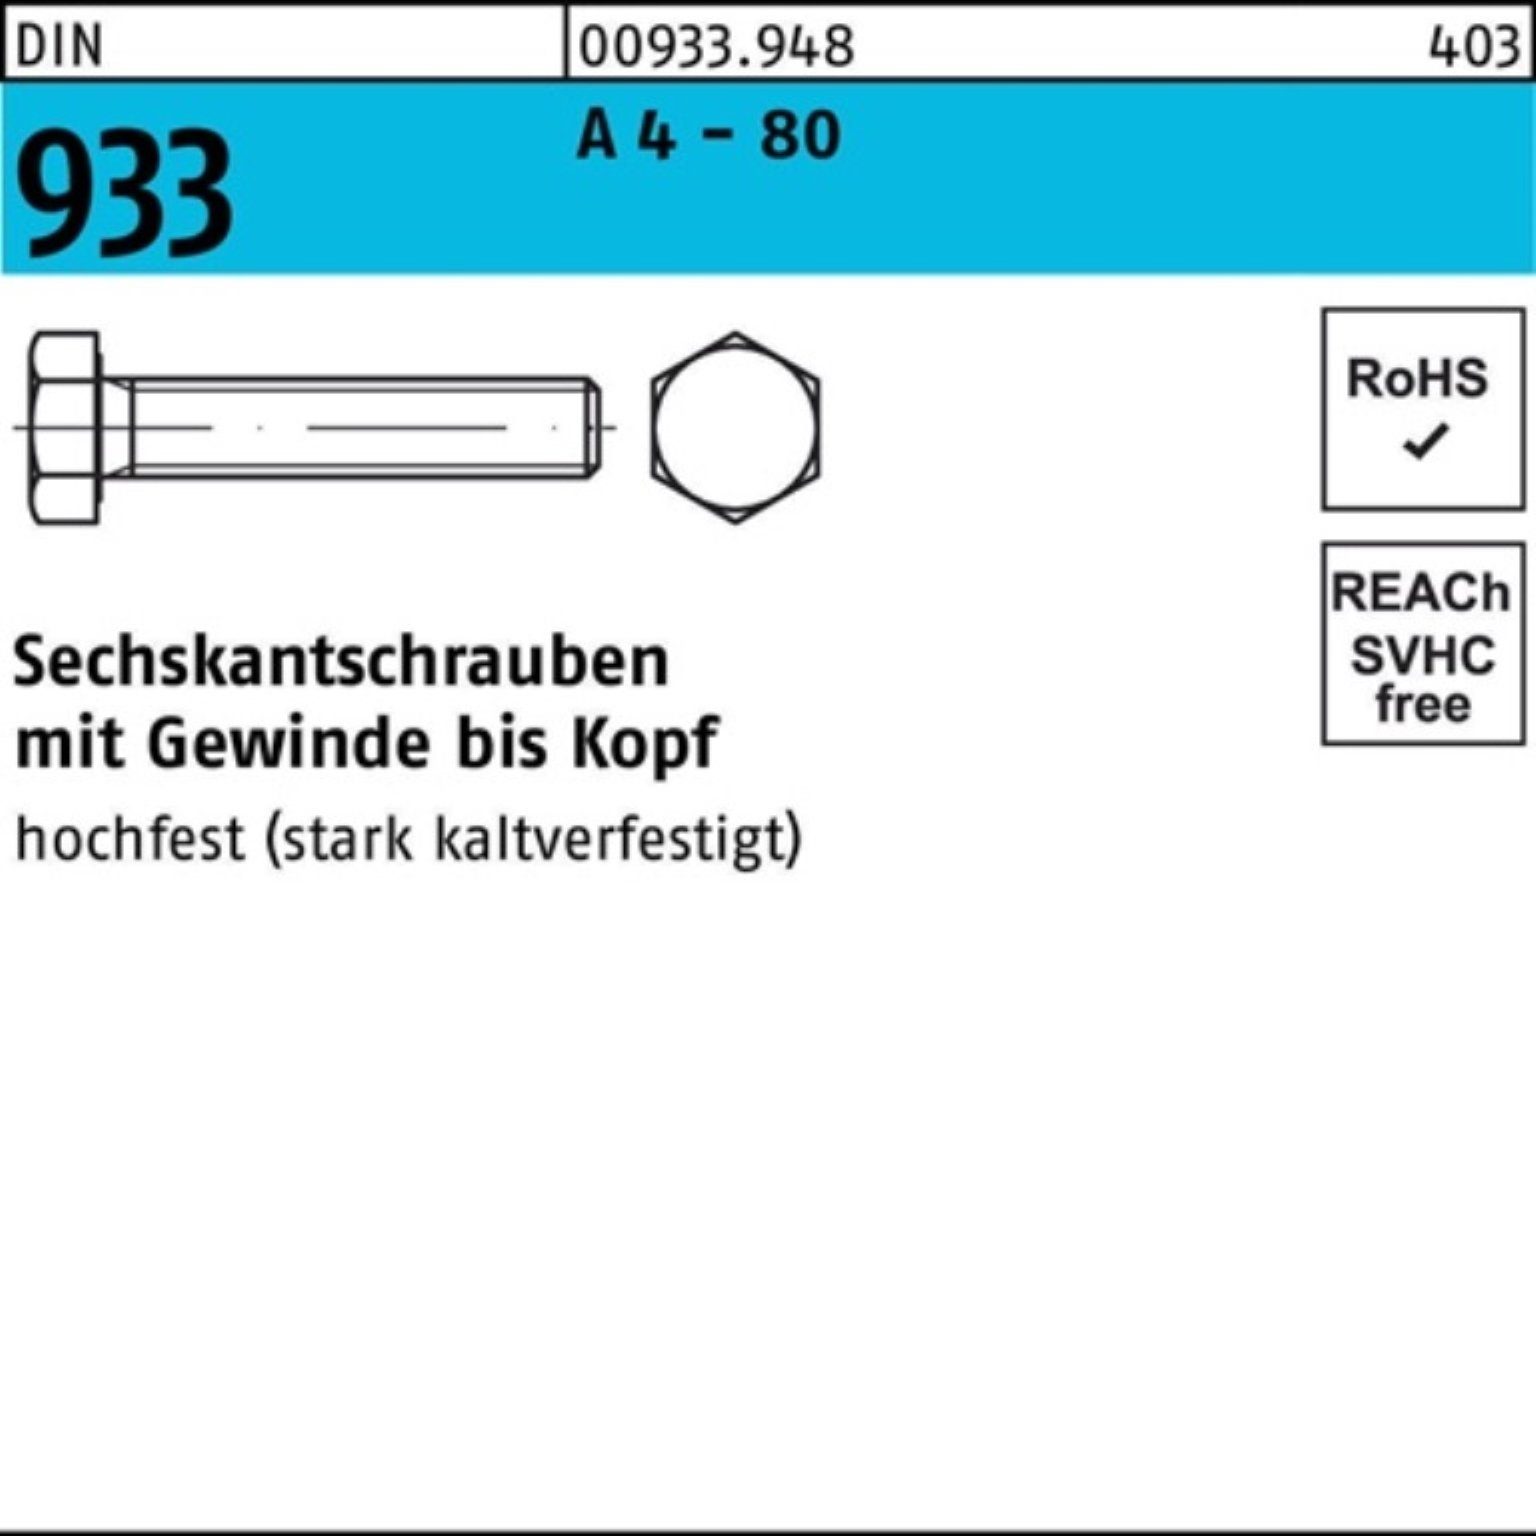 Reyher Sechskantschraube 100er Pack Sechskantschraube DIN 933 VG M10x 65 A 4 - 80 100 Stück DI